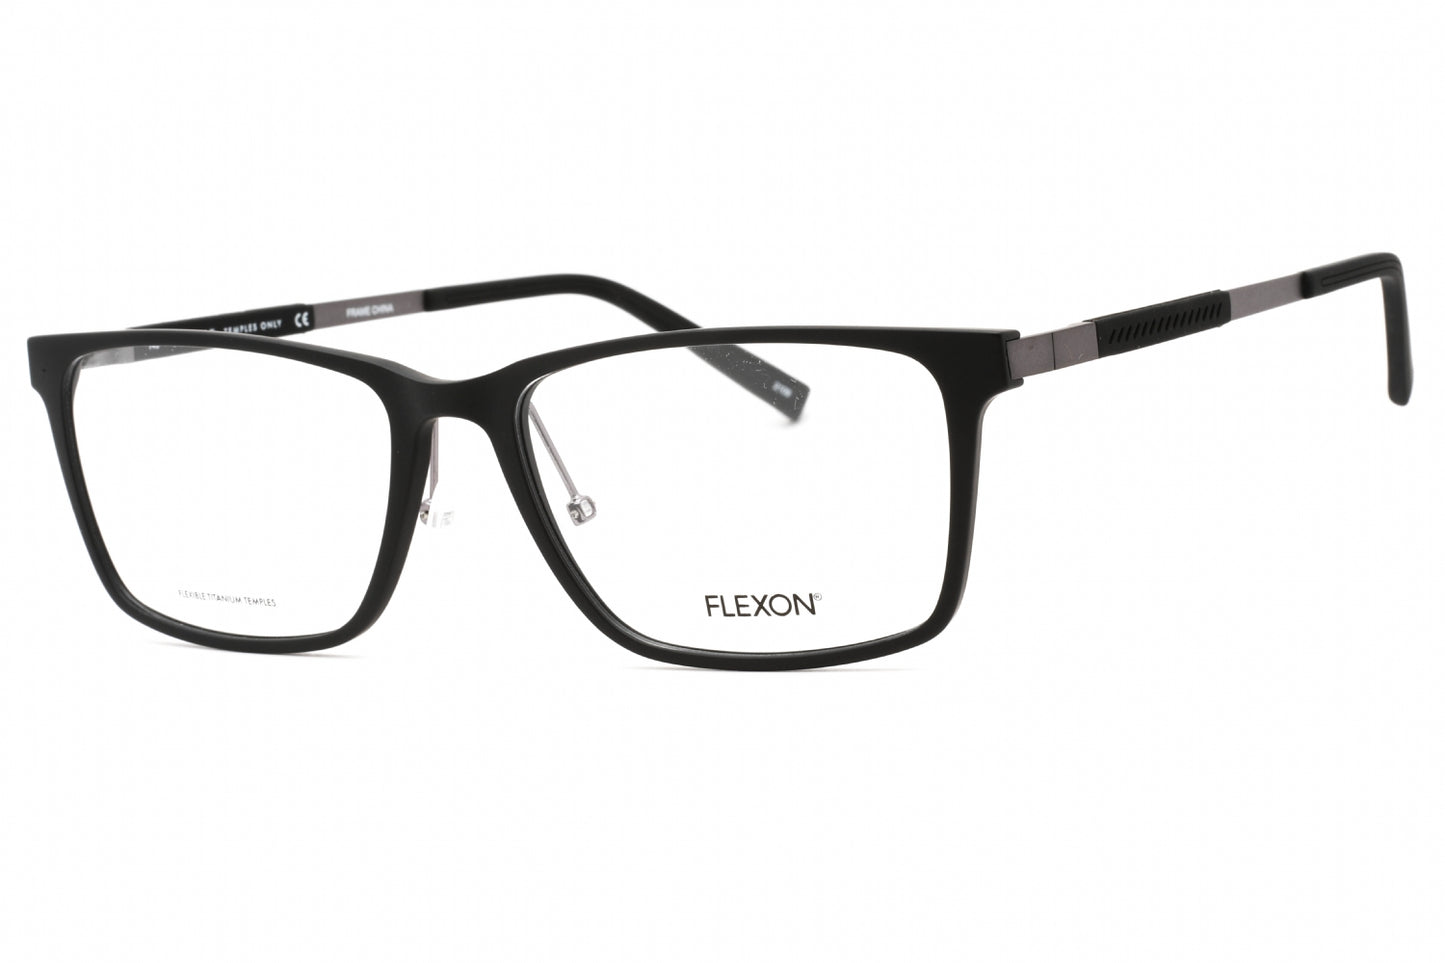 Flexon FLEXON EP8005-002 57mm New Eyeglasses